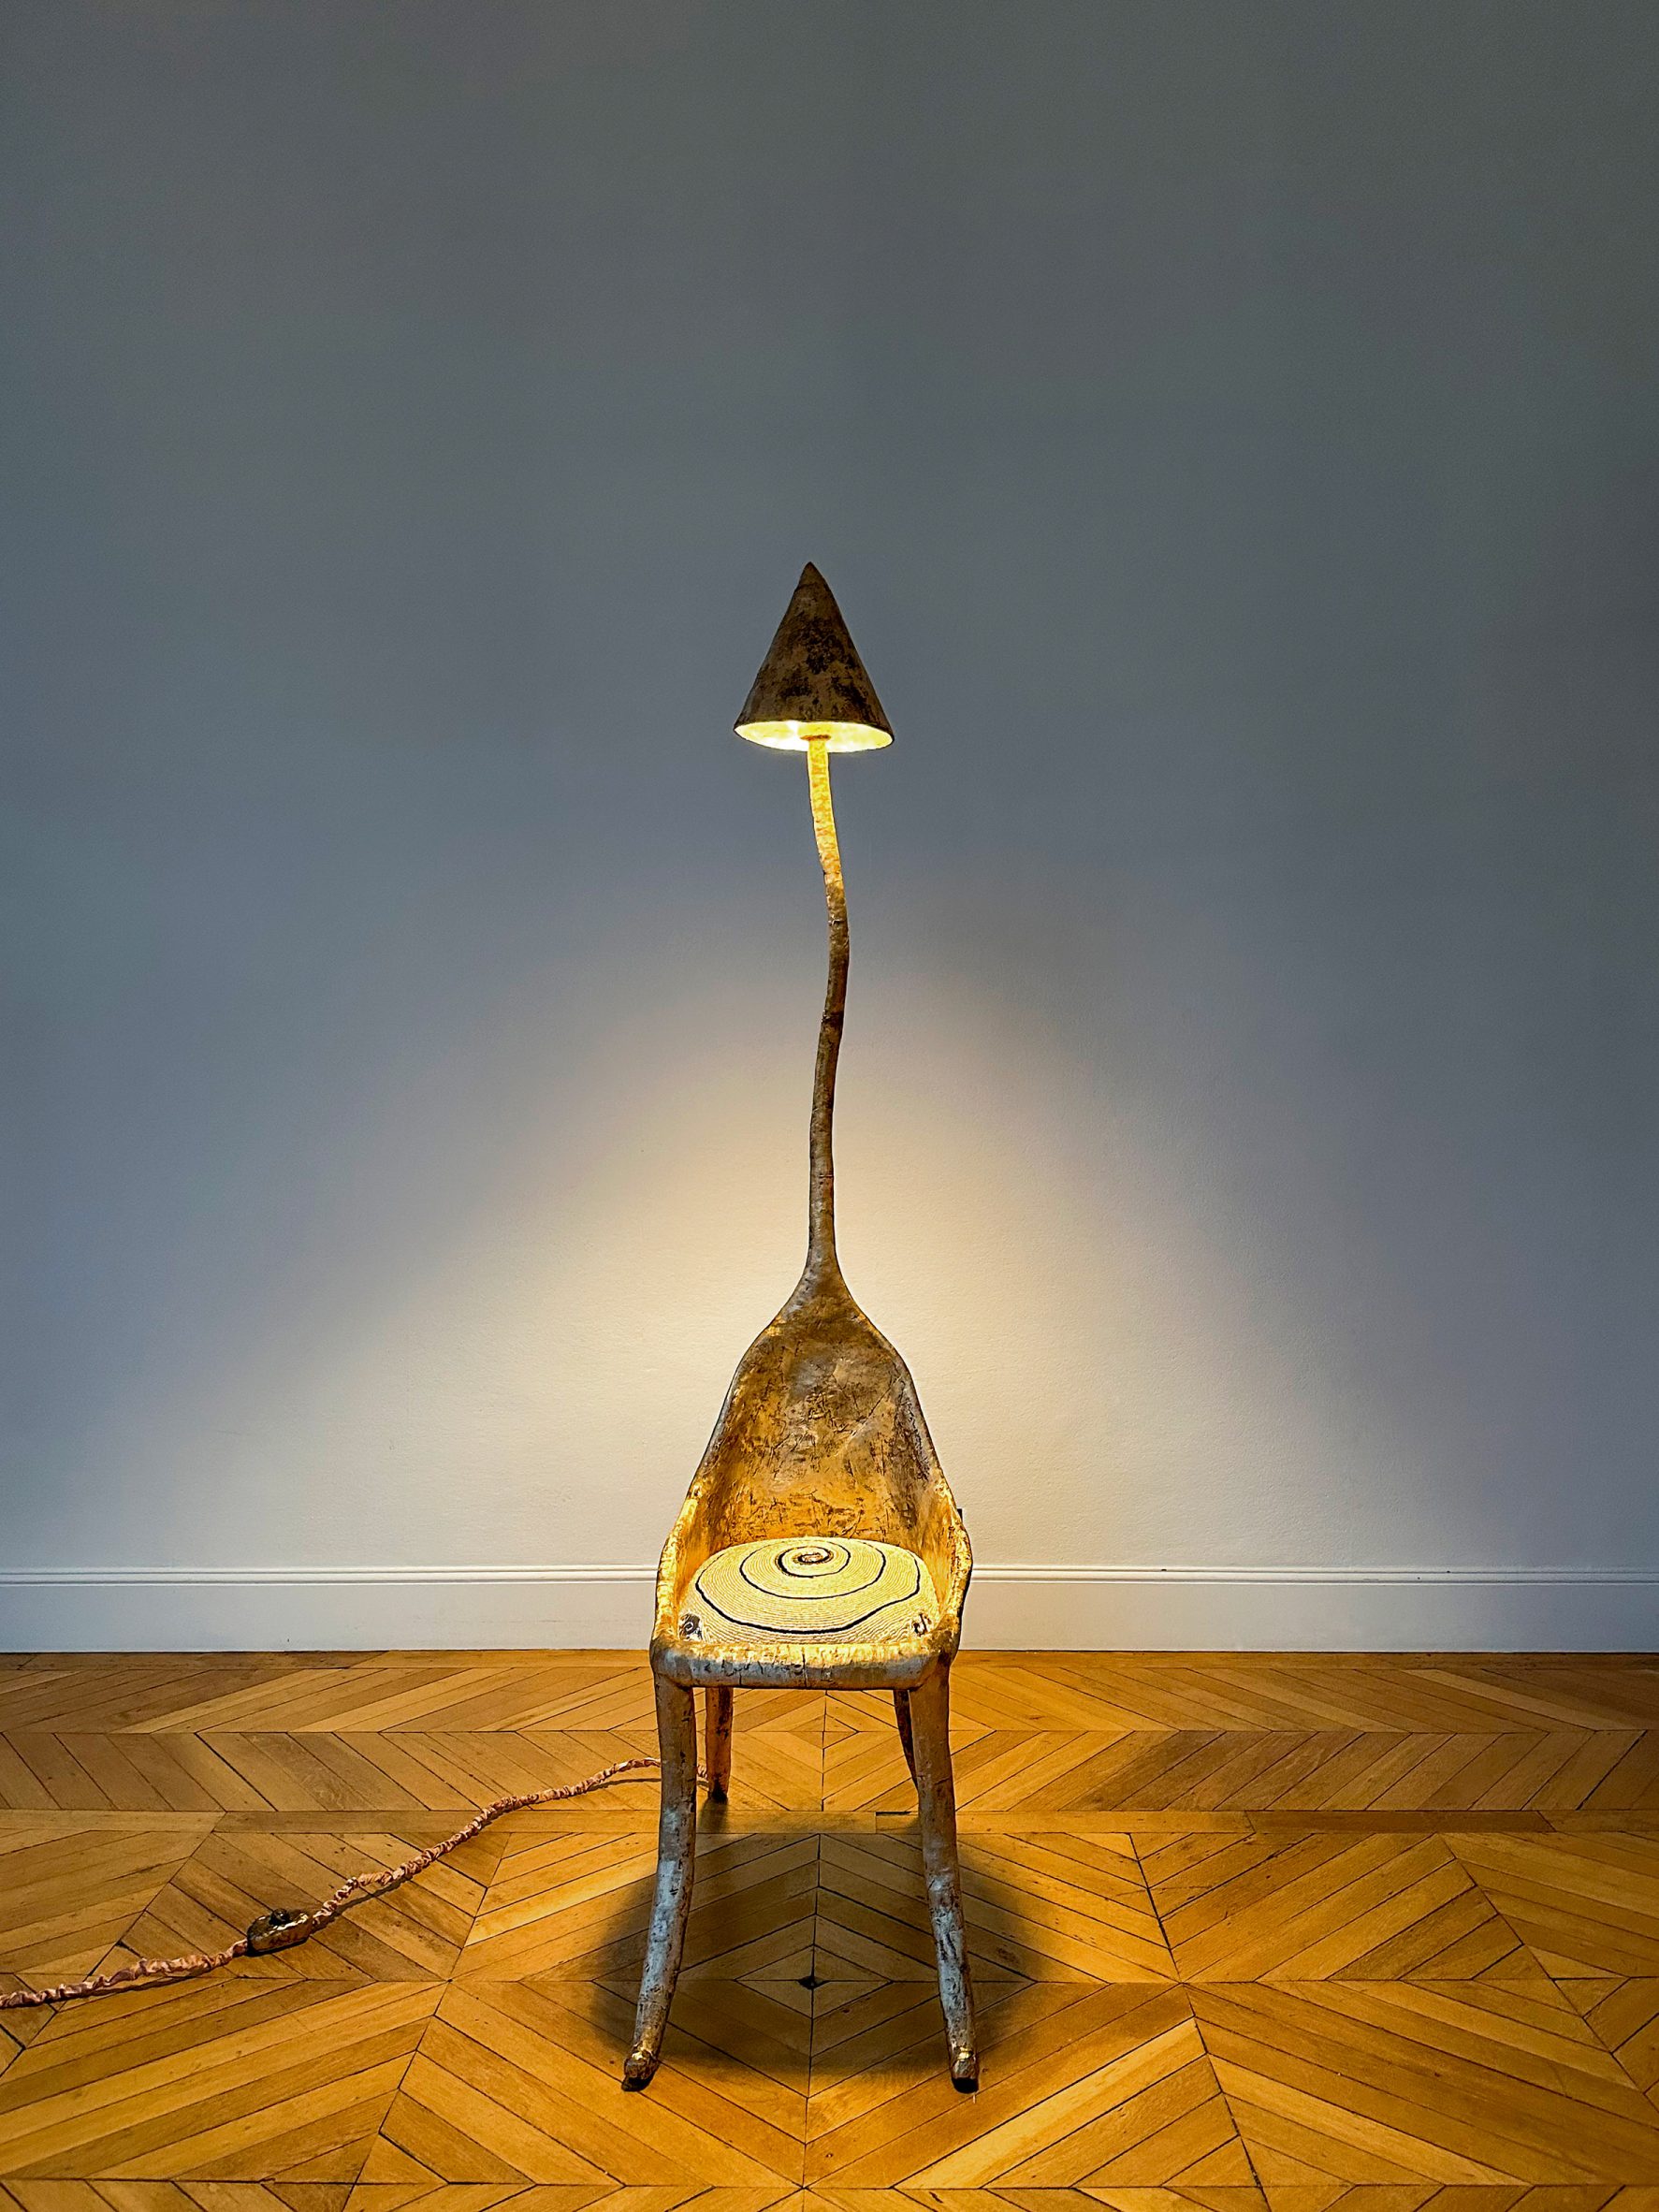 Schiaparelli chair/lamp